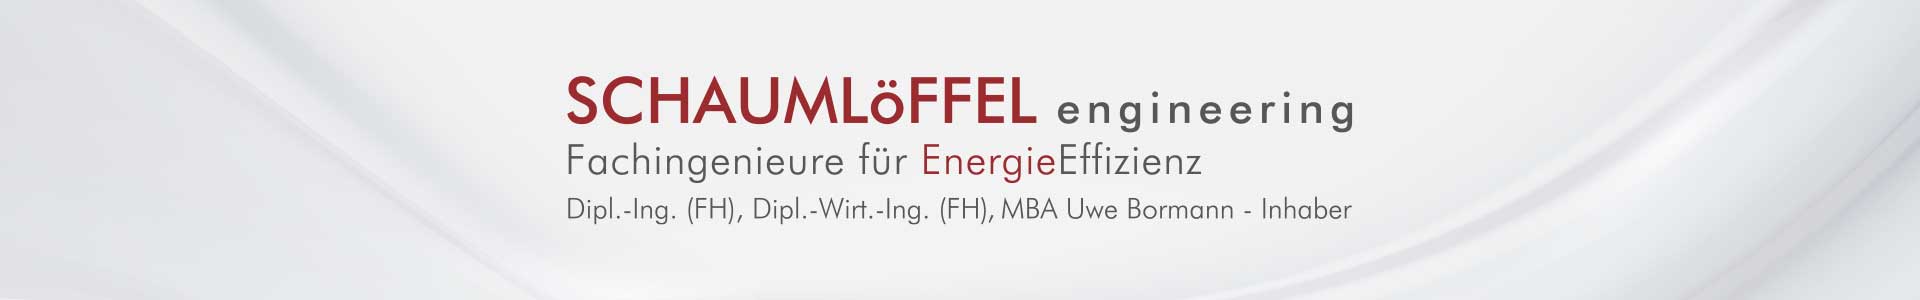 Schaumloeffel Engineering - Ihr Partner für Energieeffizienz